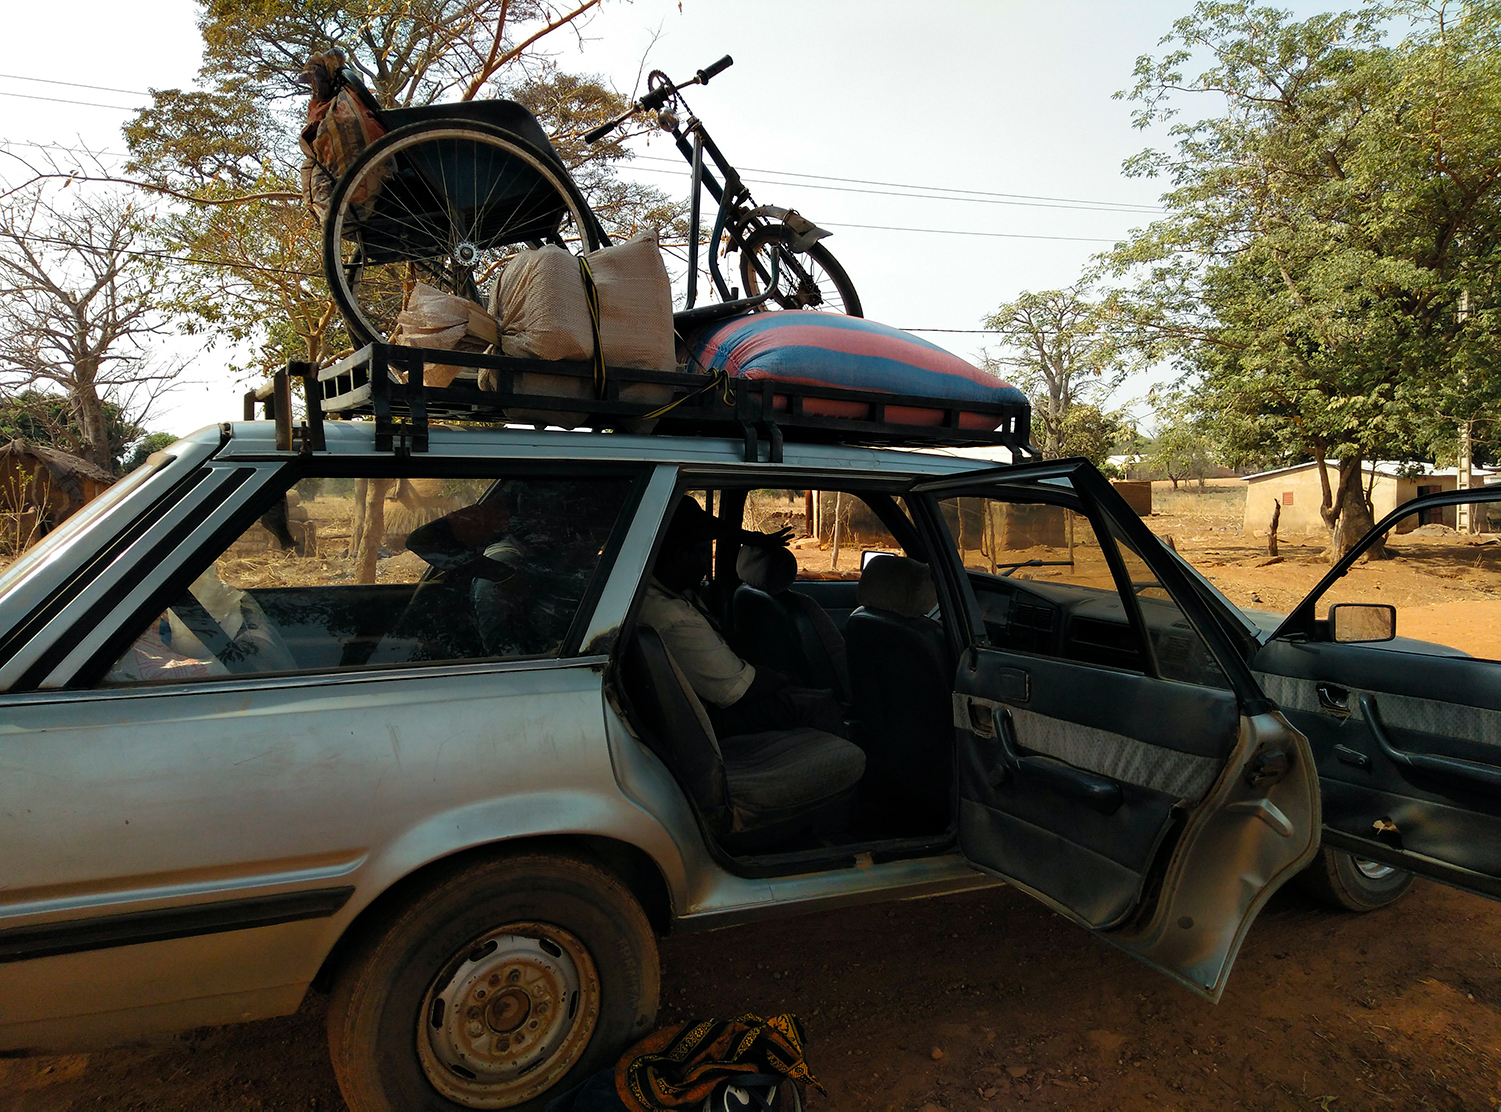 Les taxi-bus, des vieilles Citroën, transportent marchandises et passagers, entre les différents villes et villages de tout le pays. Ce taxi-bus a transporté notre envoyée spéciale de Bukombé à Natitingou, dans le nord du pays.  